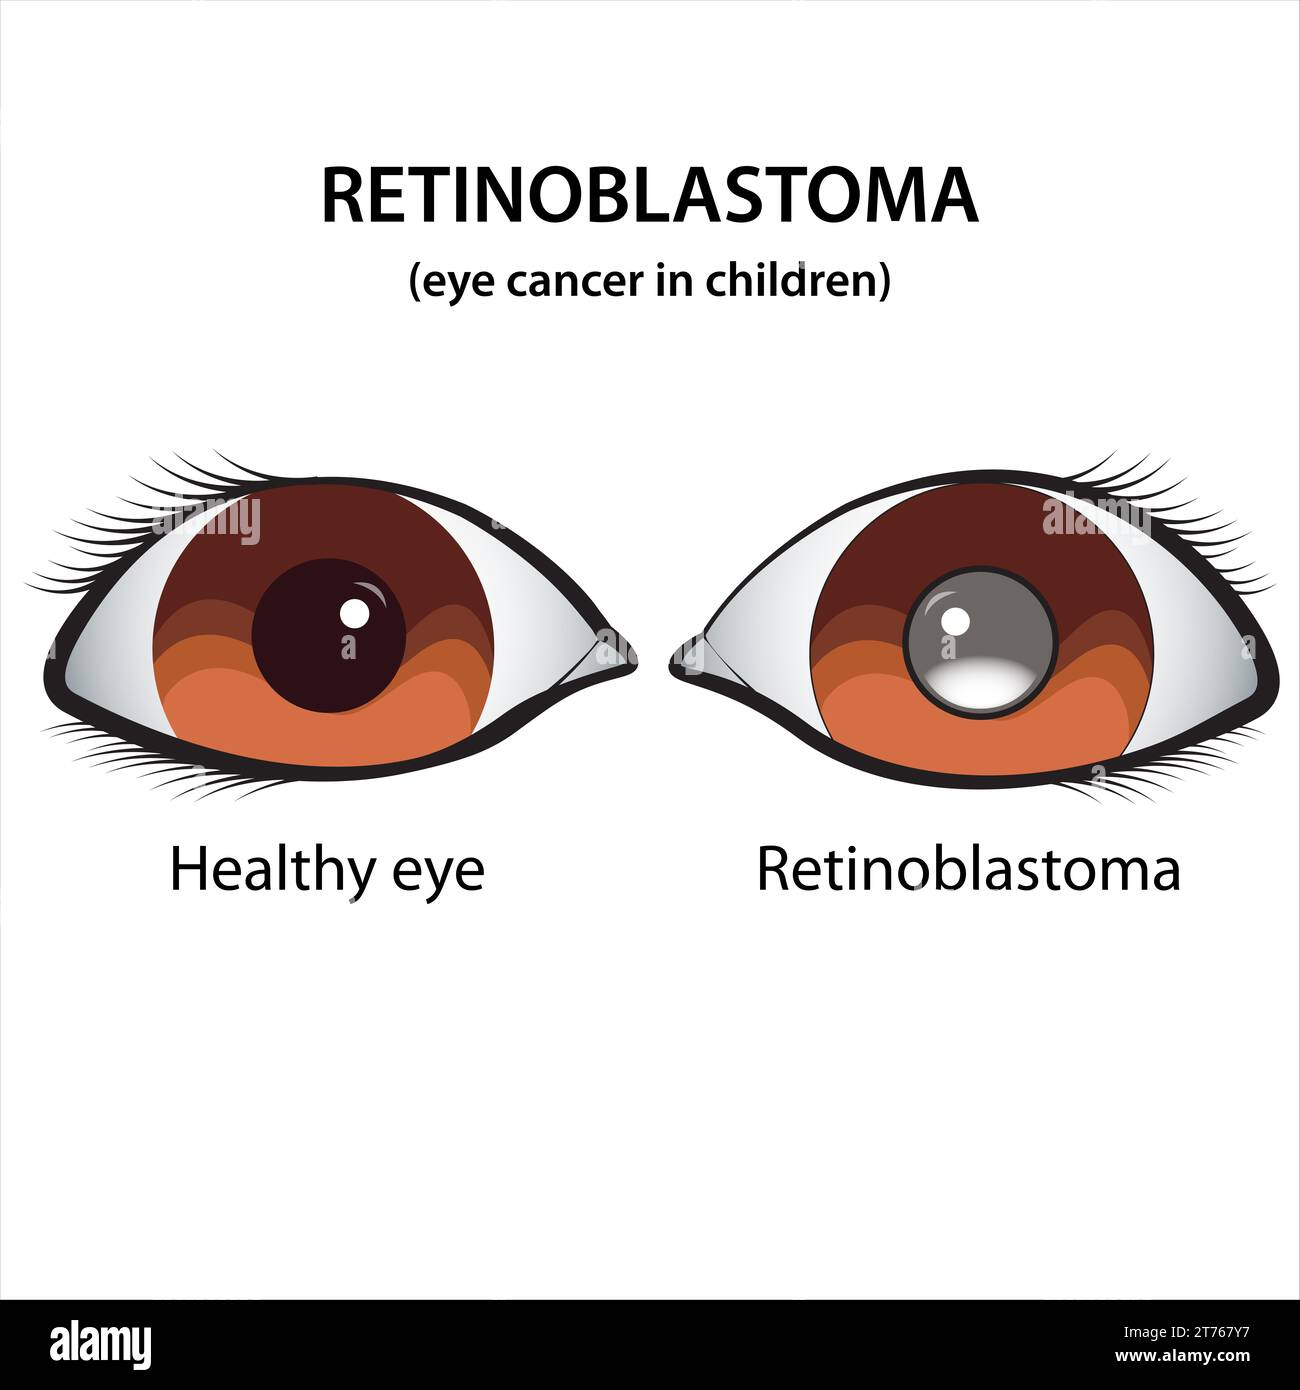 Retinoblastoma Eye cancer in children illustration Stock Photo